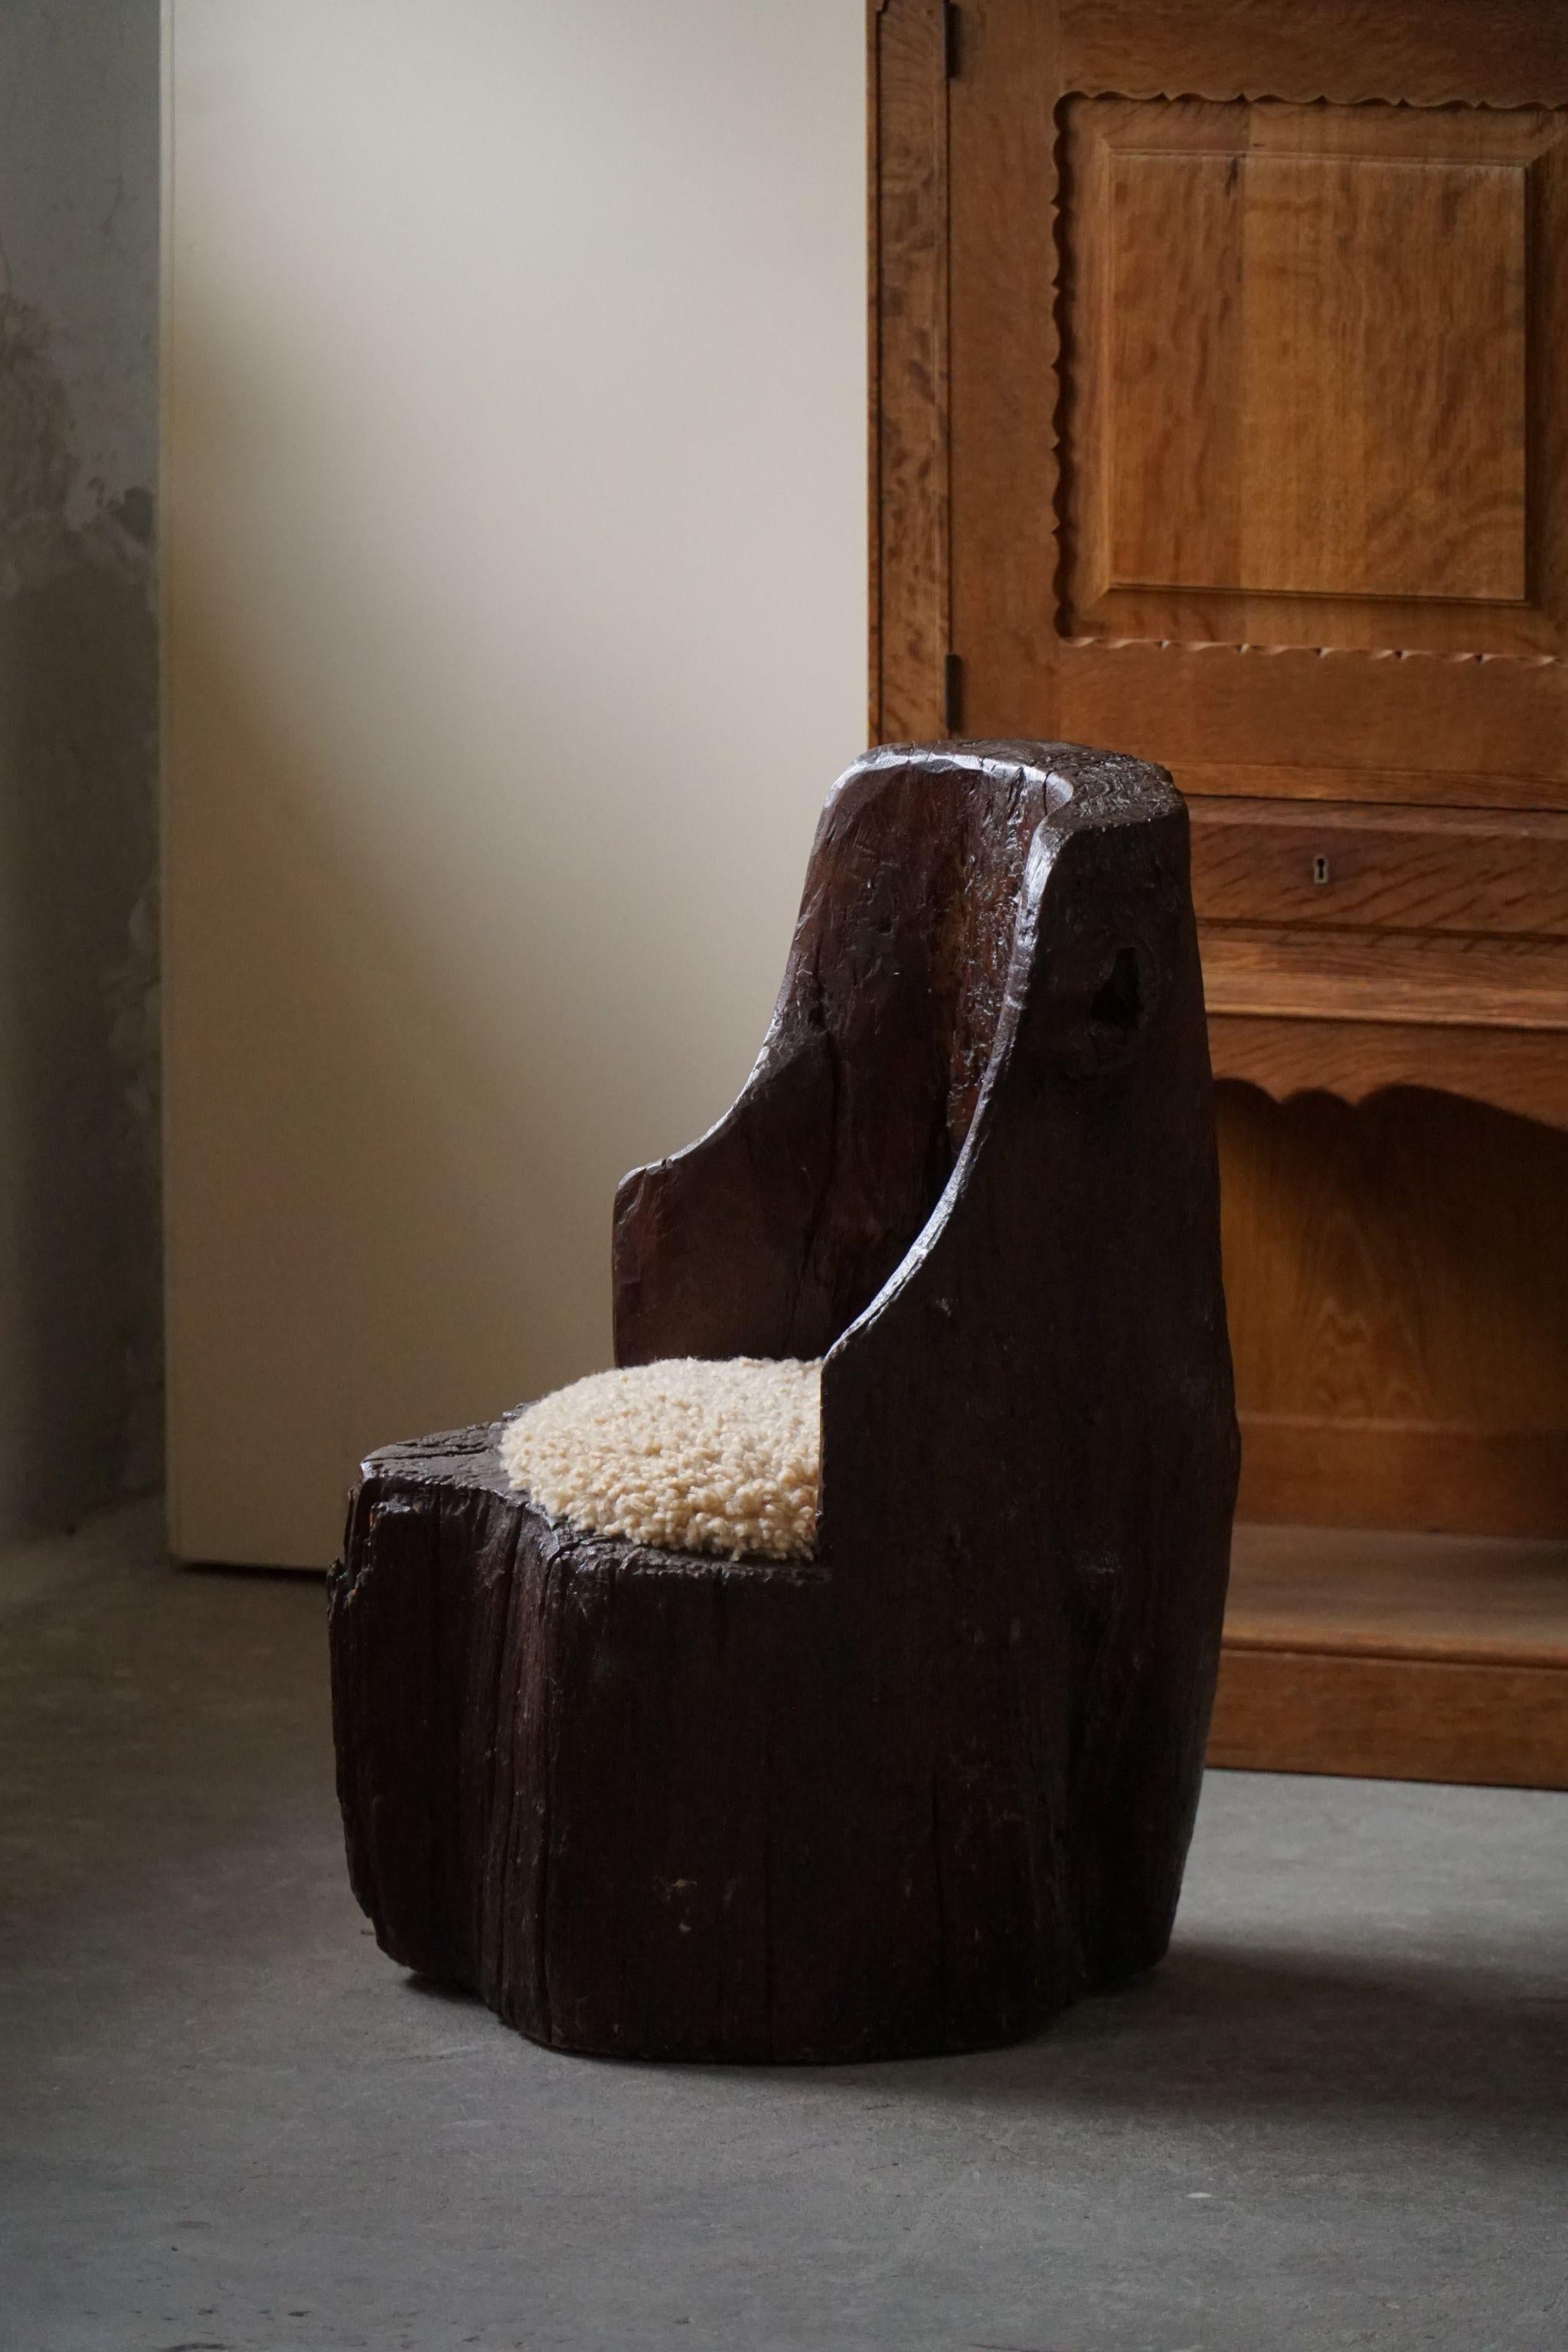 Une authentique chaise de souche primitive fabriquée en une seule pièce de bois massif. Siège retapissé en laine d'agneau shearling de grande qualité. 
Sculpté à la main par un ébéniste suédois au début du XXe siècle. Une pièce unique et lourde de